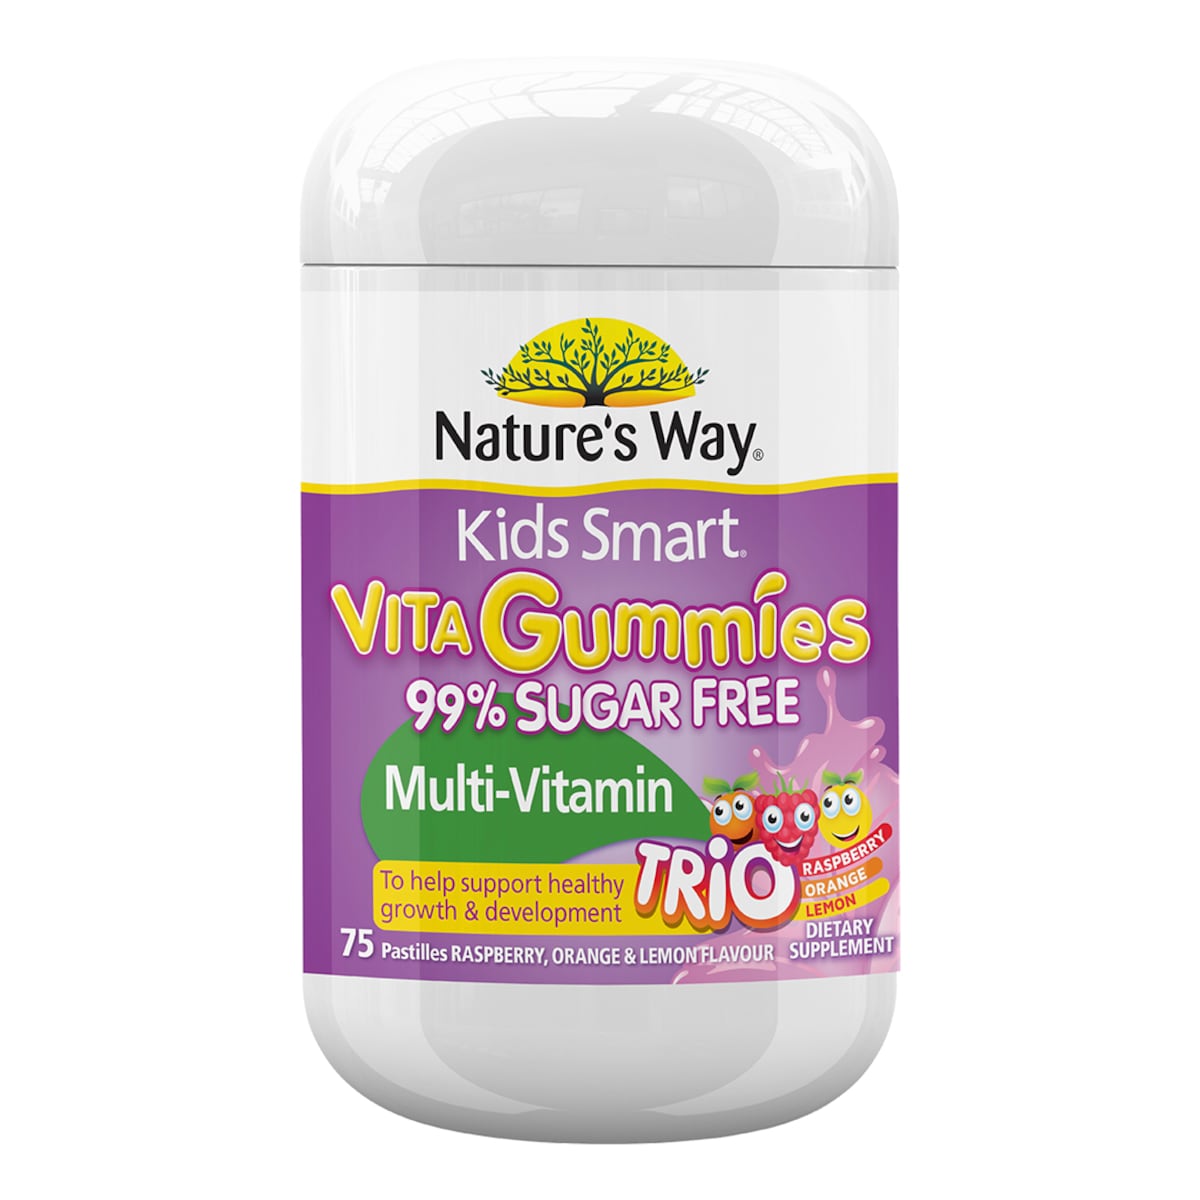 Natures Way Kids Smart Vita Gummies MultiVitamin 99% Sugar Free Trio Flavour 75 Pack